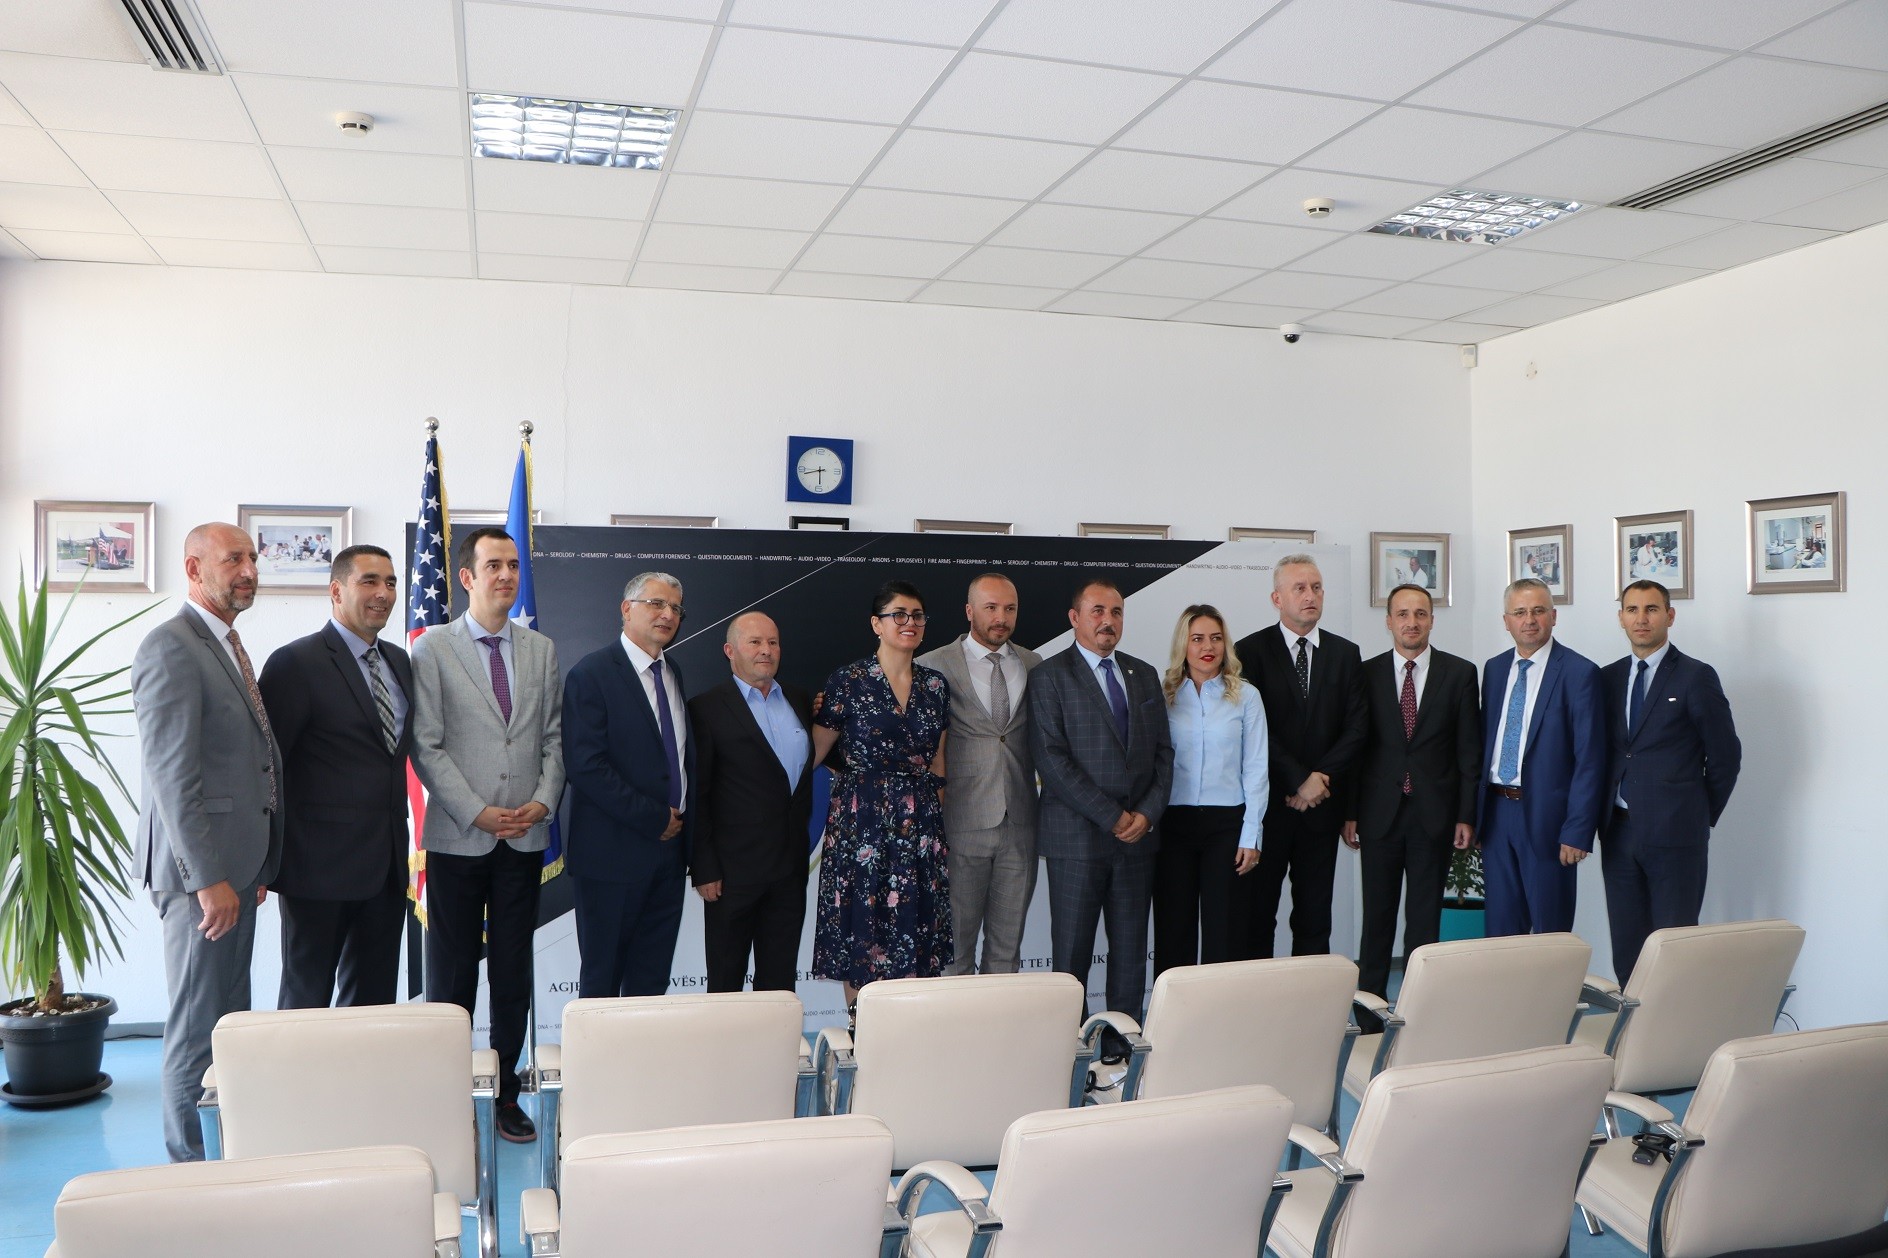 Agjencia e Kosovës për Forenzikë pranoi certifikatën e Ri-akreditimit të Laboratorëve